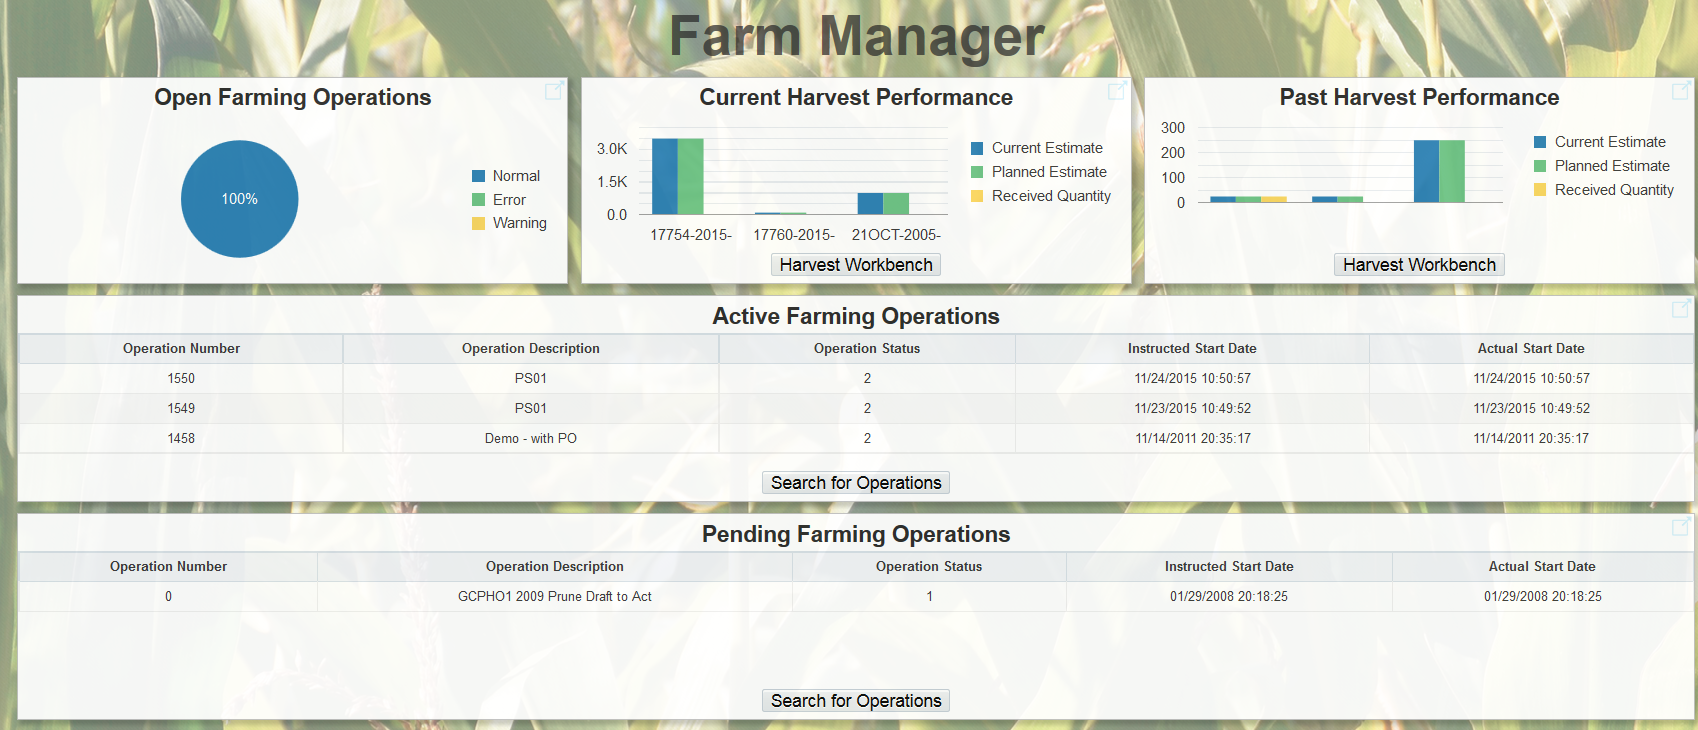 Farm Manager Active Content EnterpriseOne Page.